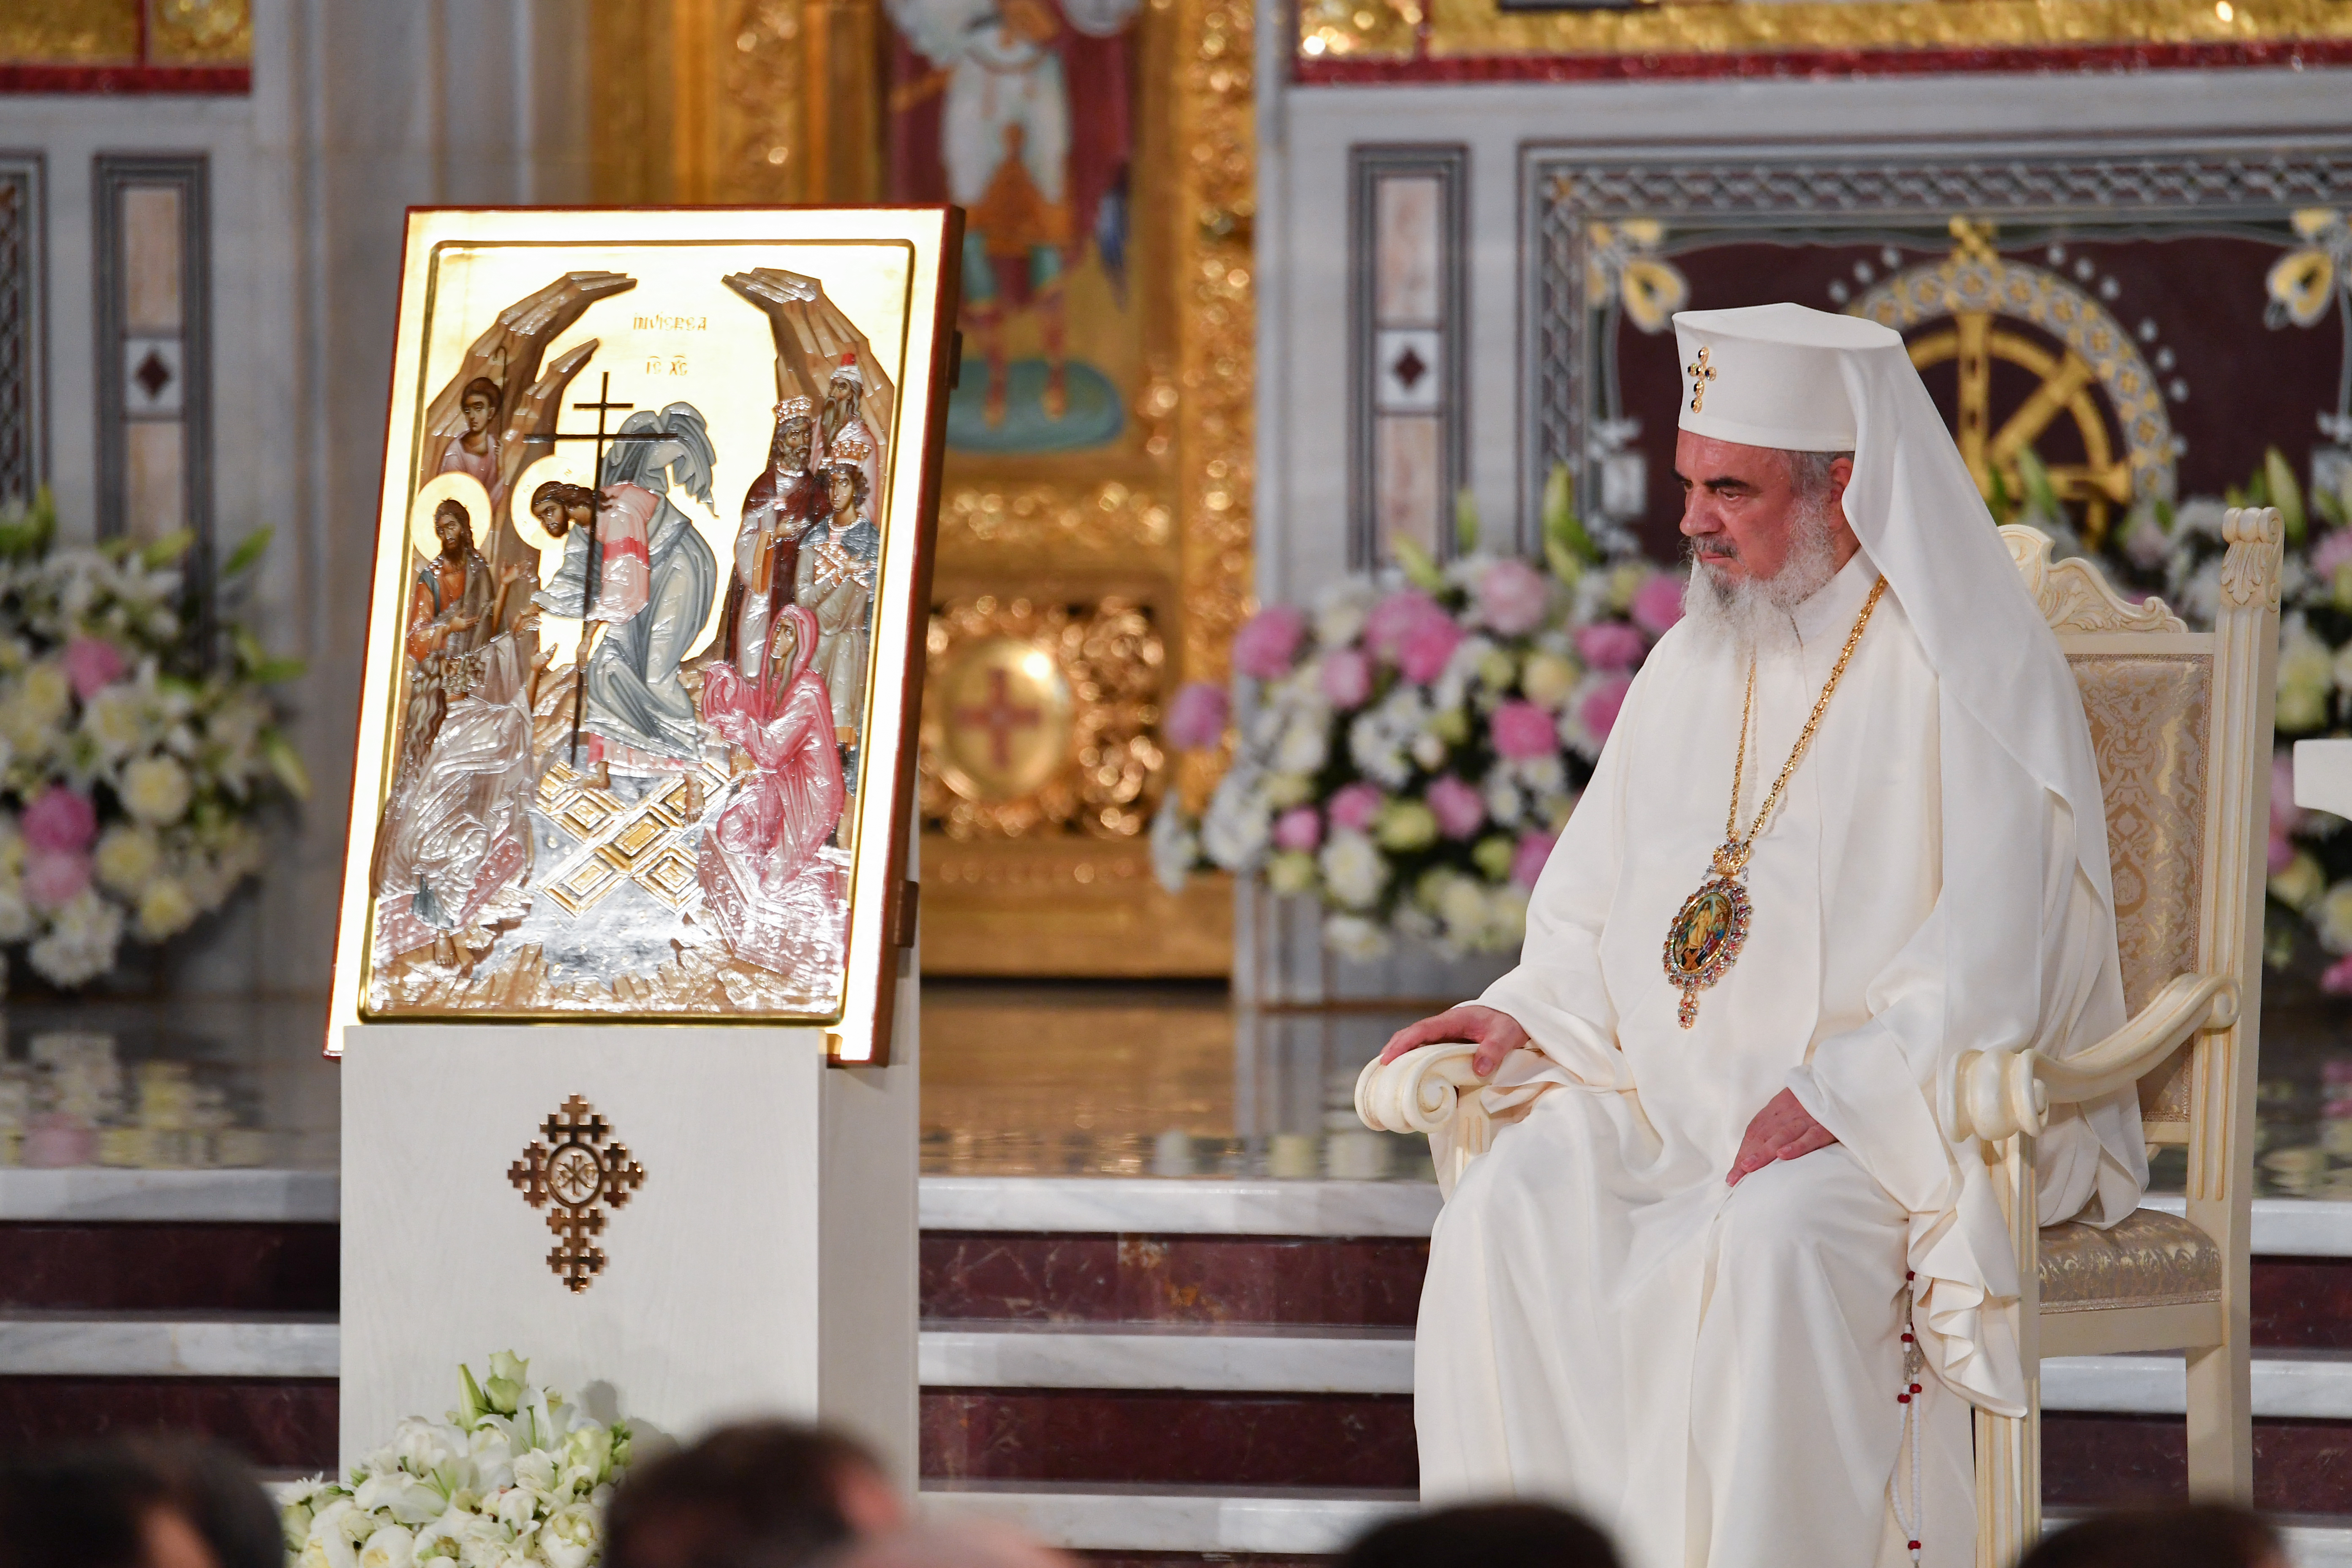 Daniel pátriárka, a román ortodox egyház feje is beoltatta magát végre